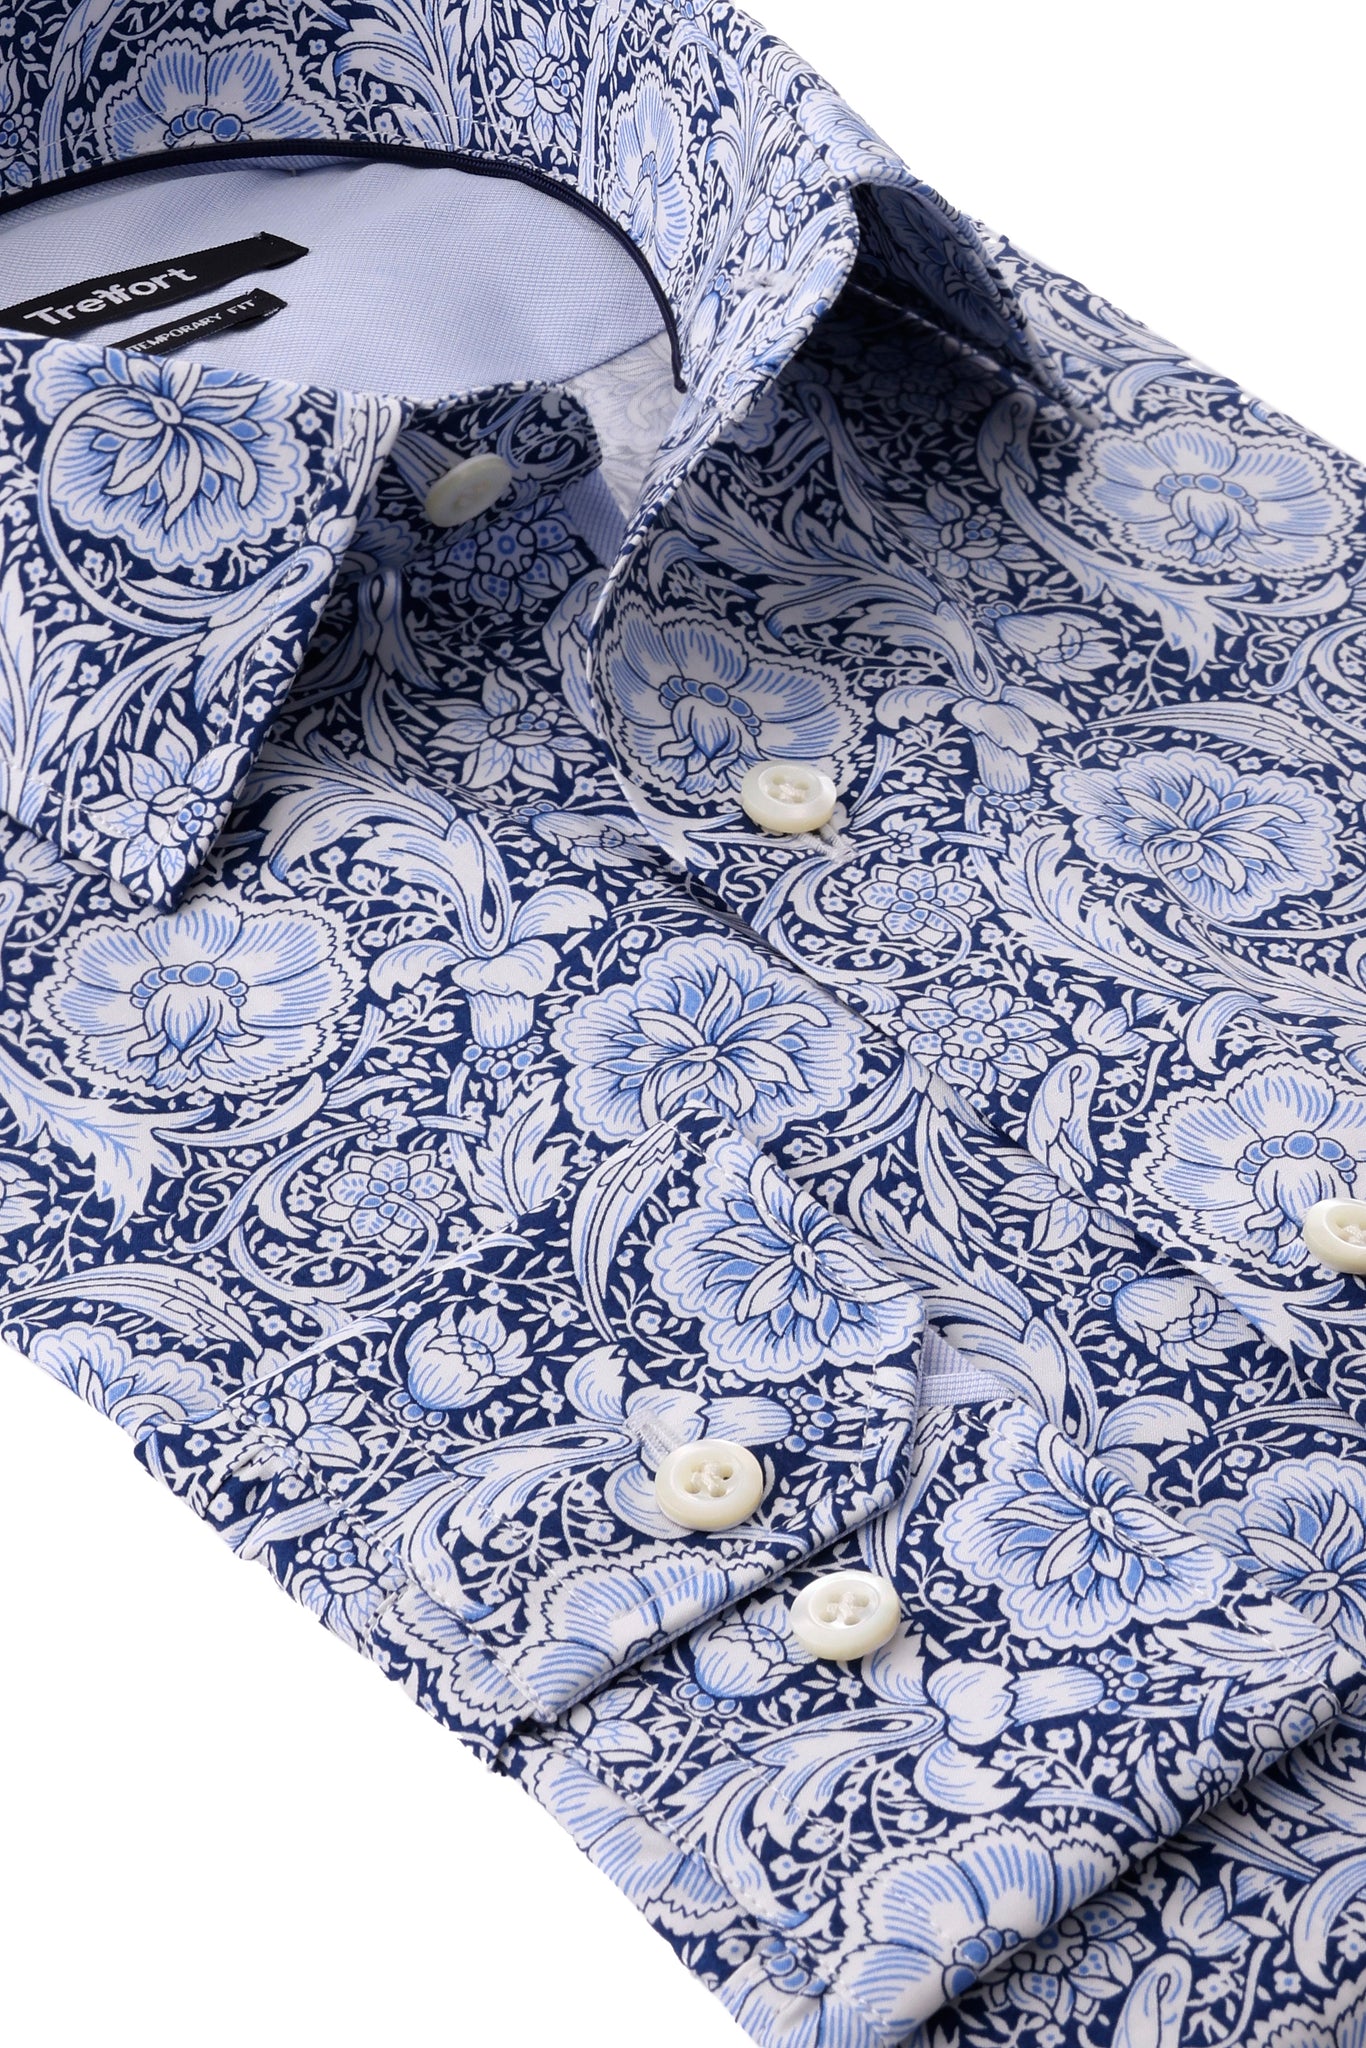 Luxury Floral Dress Shirt - Premium Cotton - Treffort Shirts